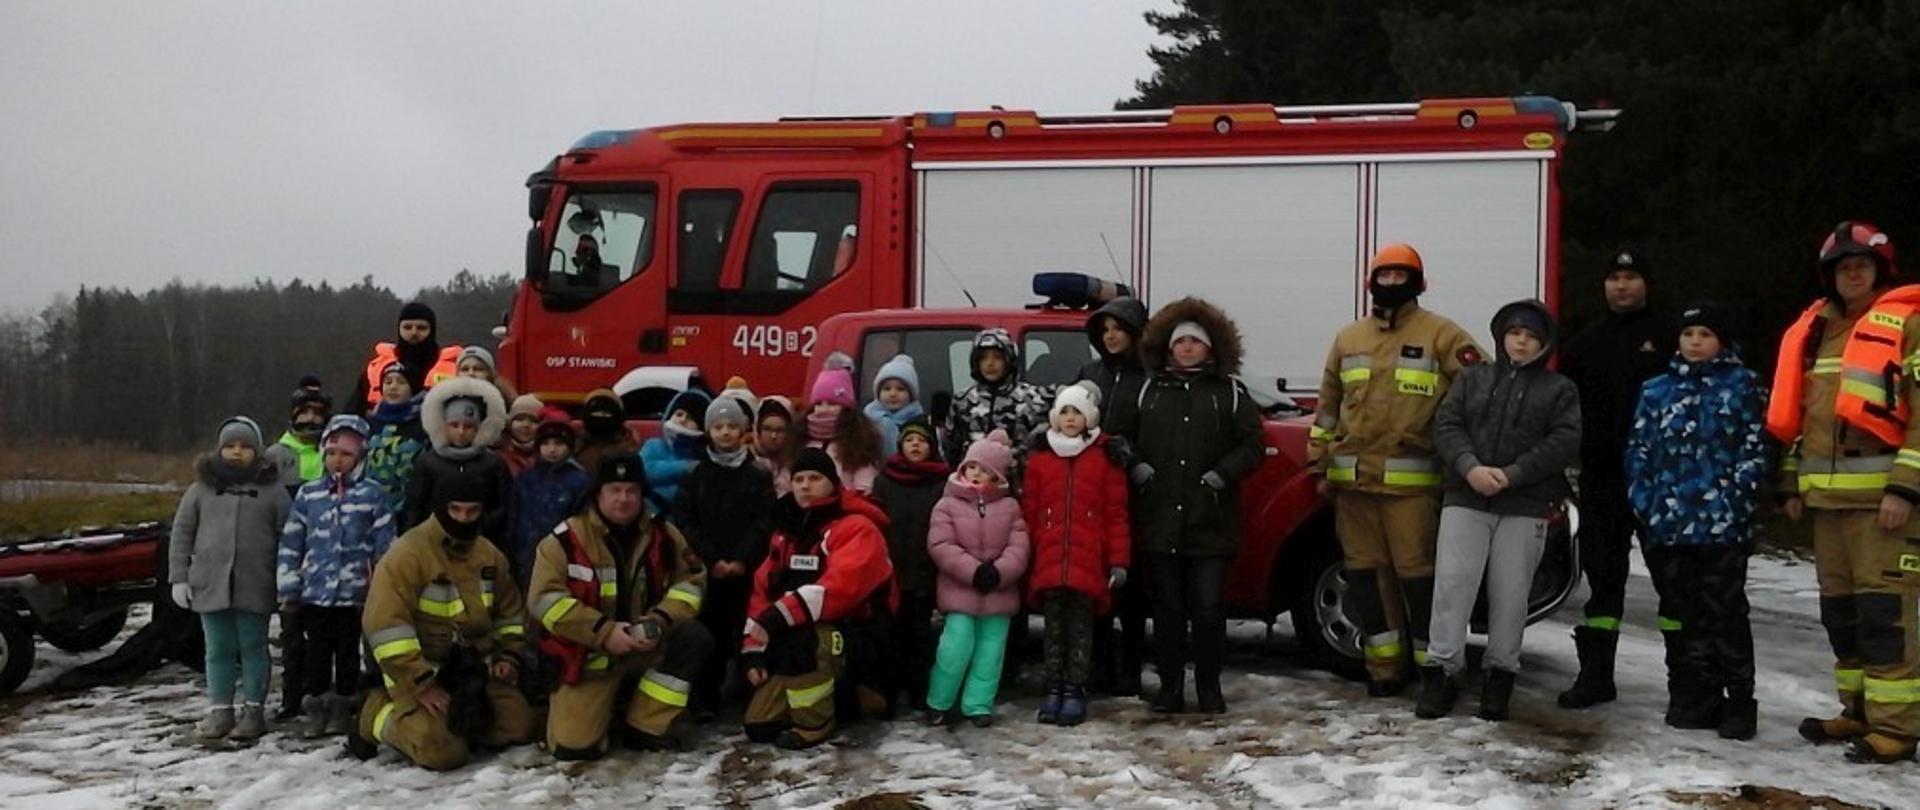 Na zdjęciu widać dzieci ze strażakami, w tyle pojazdy strażackie.